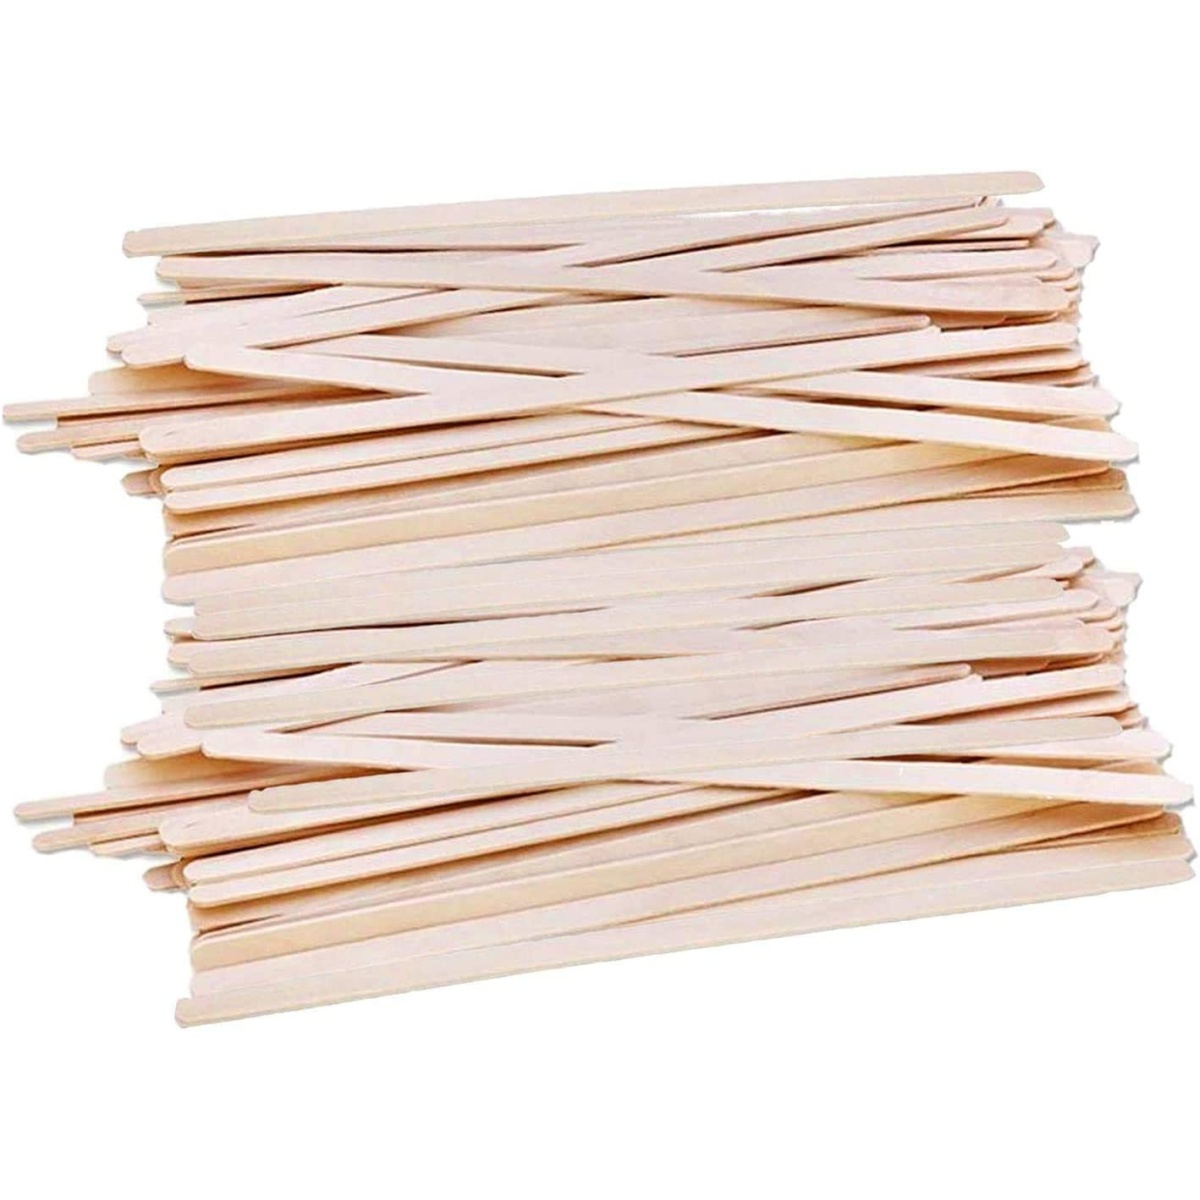 Pure Eco-Friendly Birch Wooden Stir Sticks - China Wooden Stir and Wooden  Sticks price